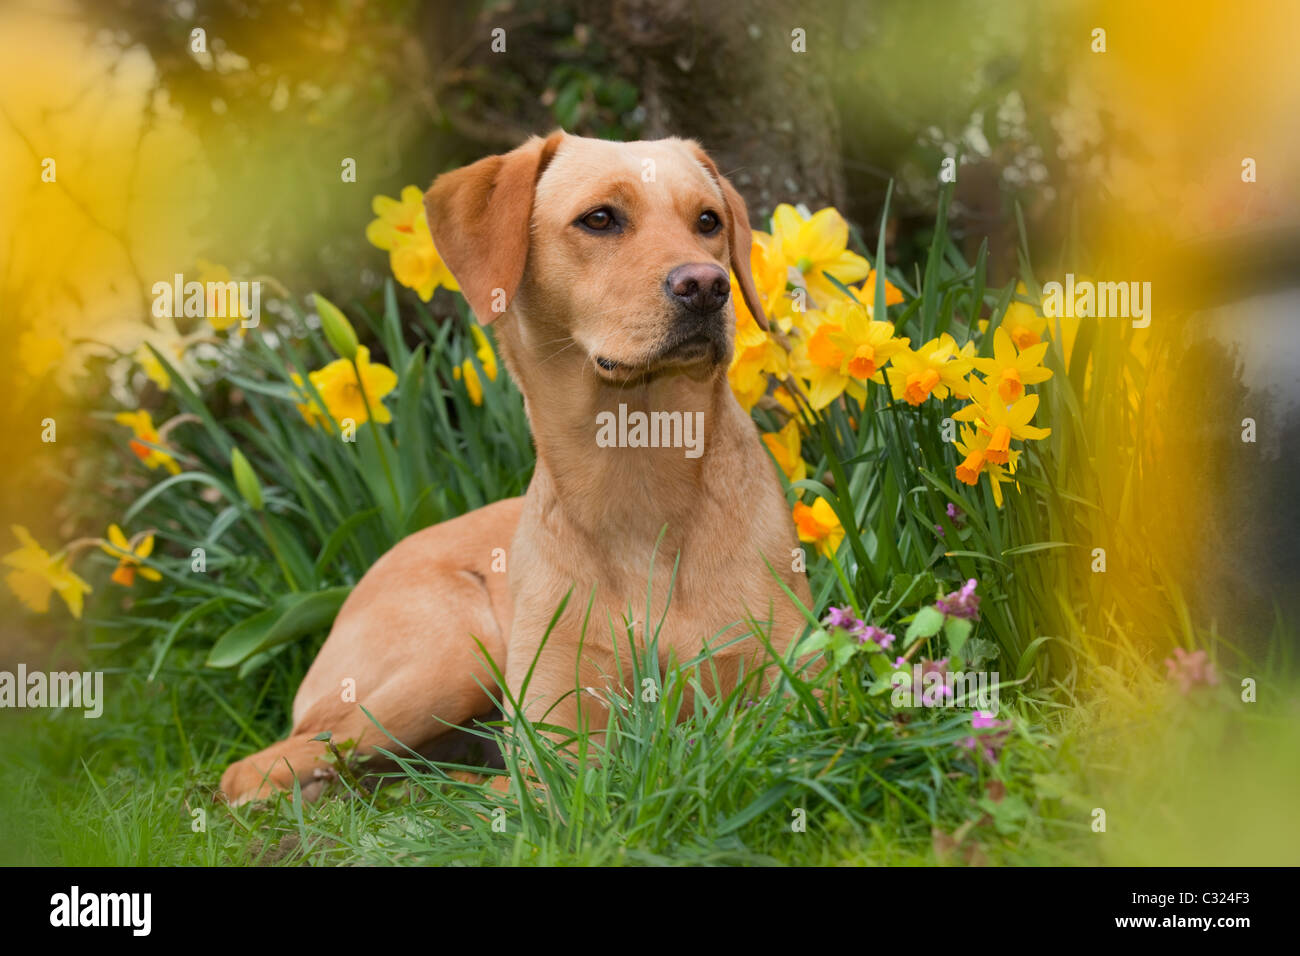 Yellow Labrador in spring garden Stock Photo